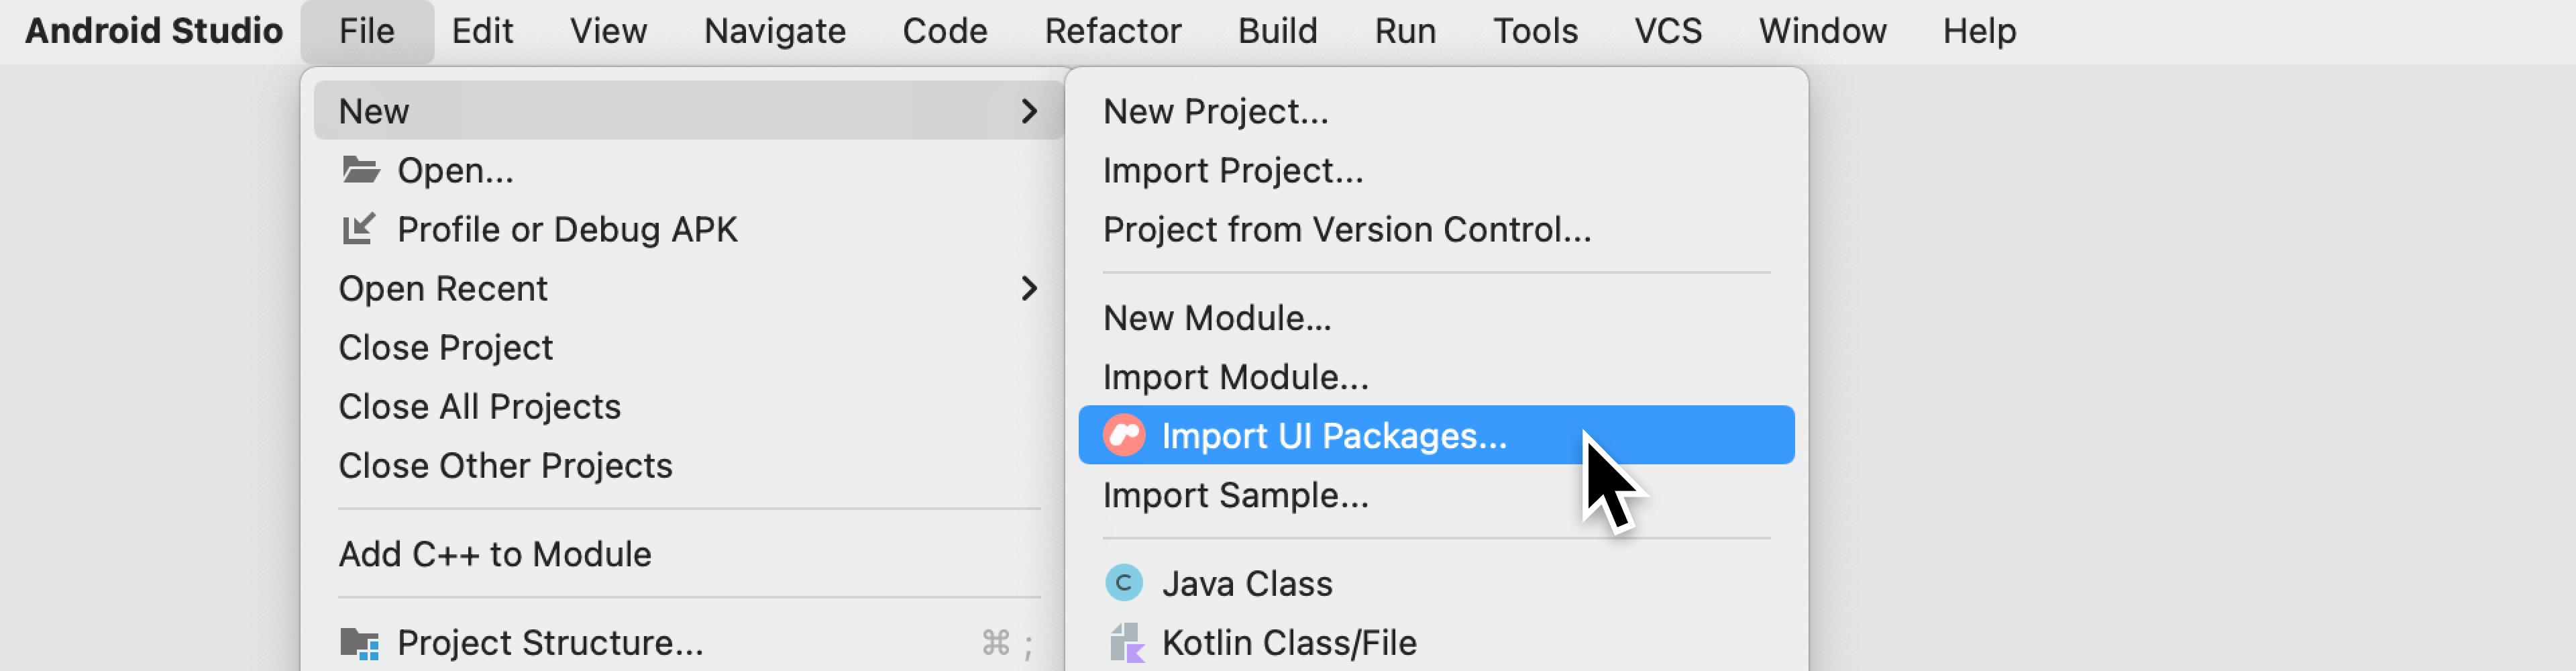 Opción Import UI Packages… en el menú File